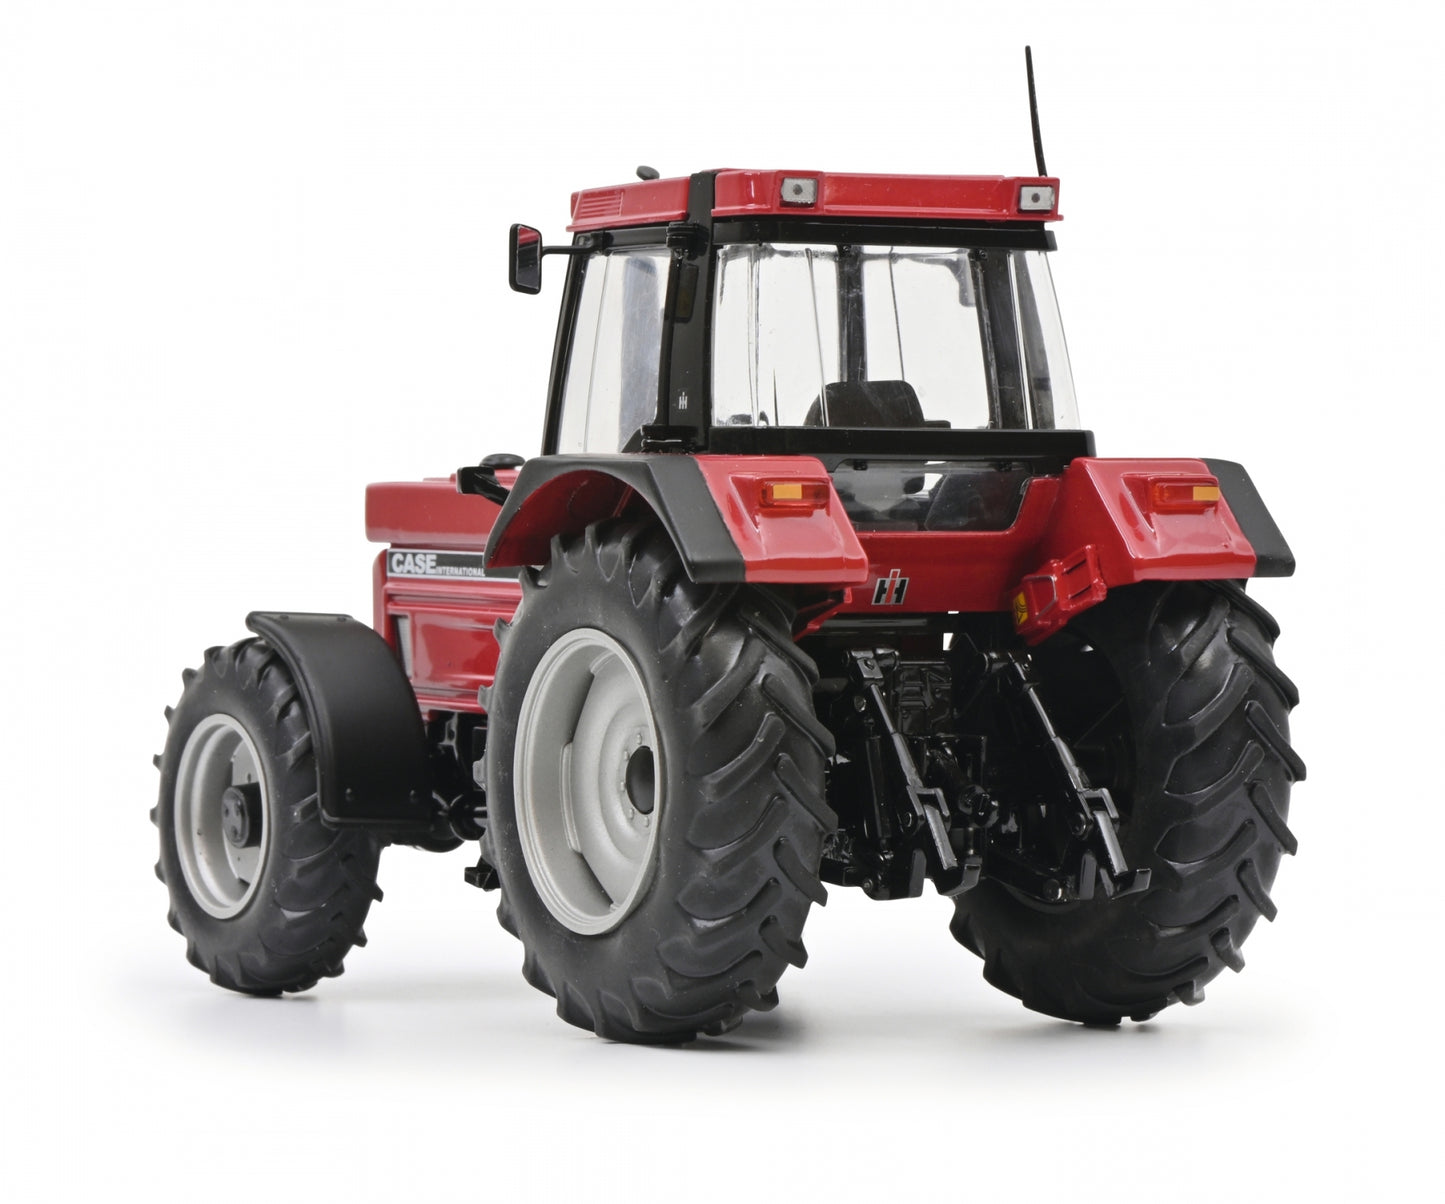 Schuco 1:32 Case International 1255 XL Tractor 450778700